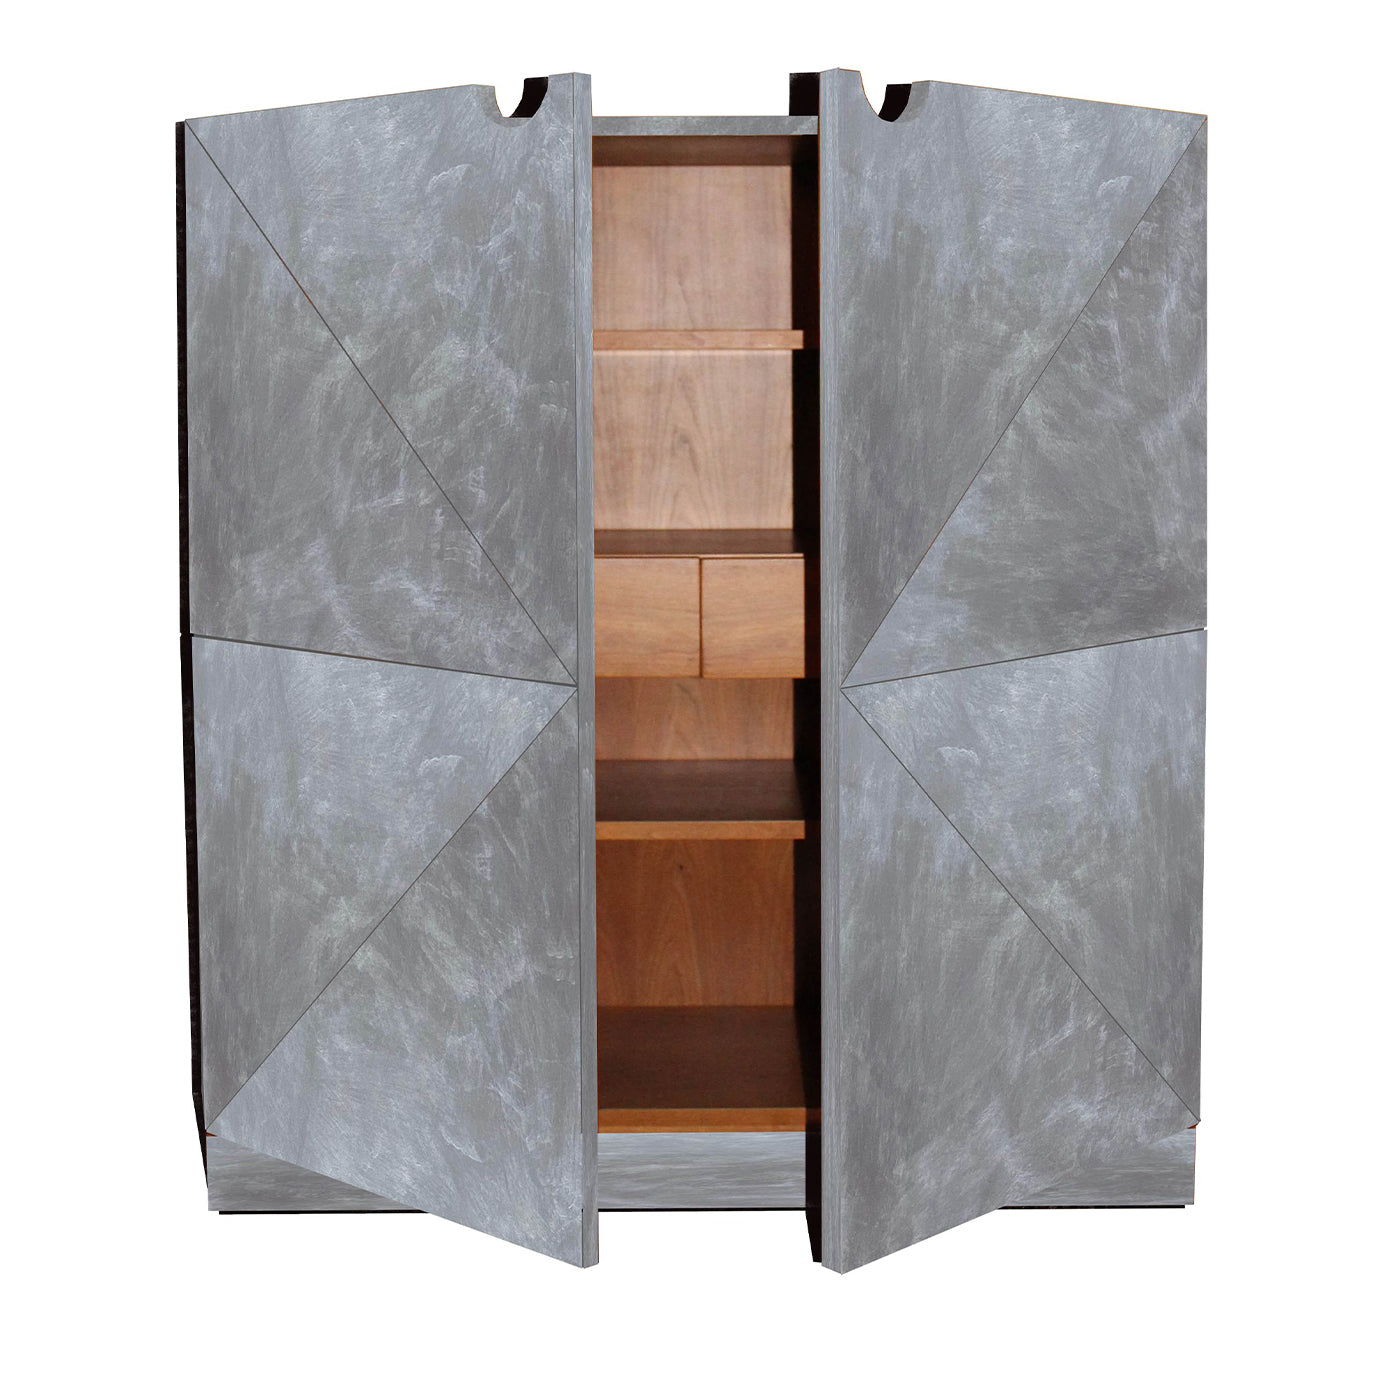 Geometric Silver Cabinet by Pietro Meccani - Alternative view 2